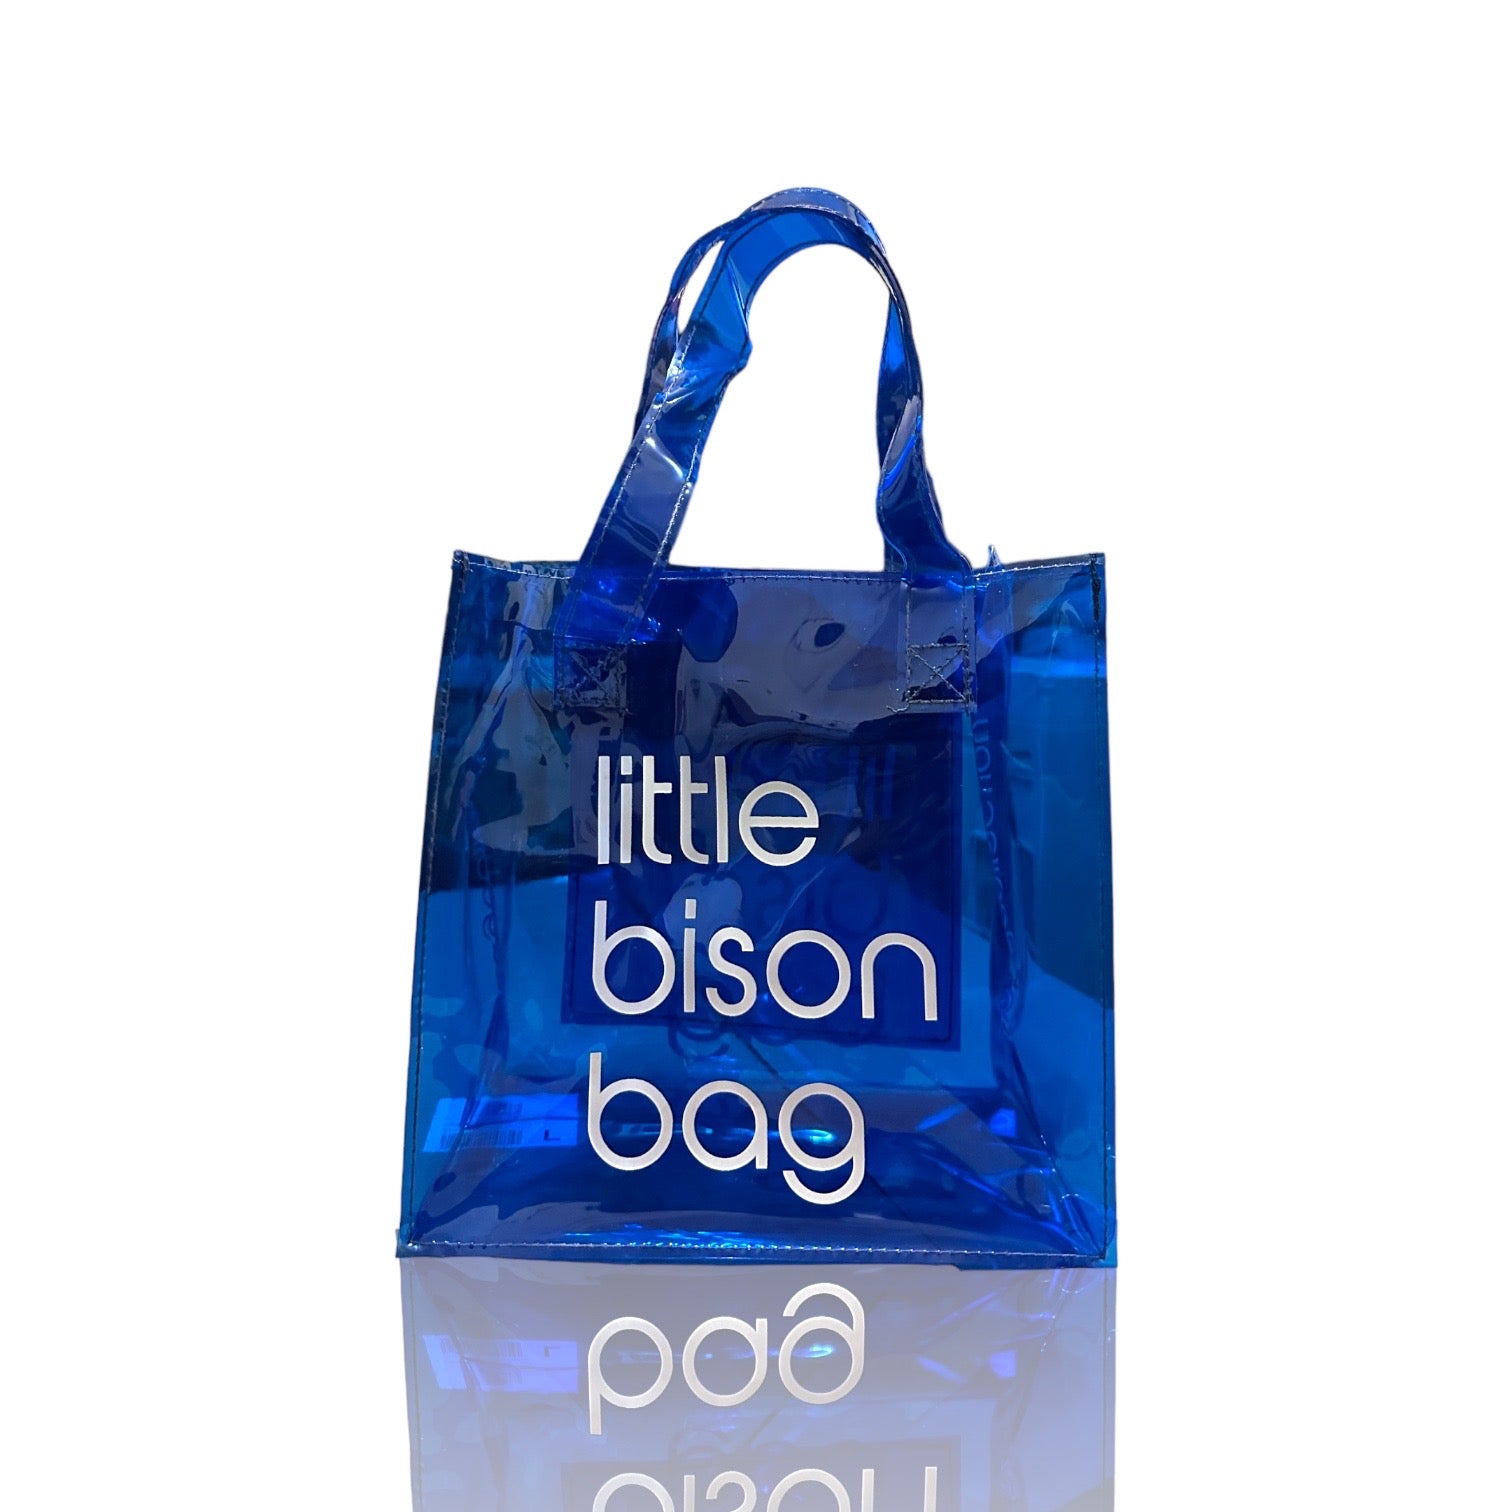 little bison bag